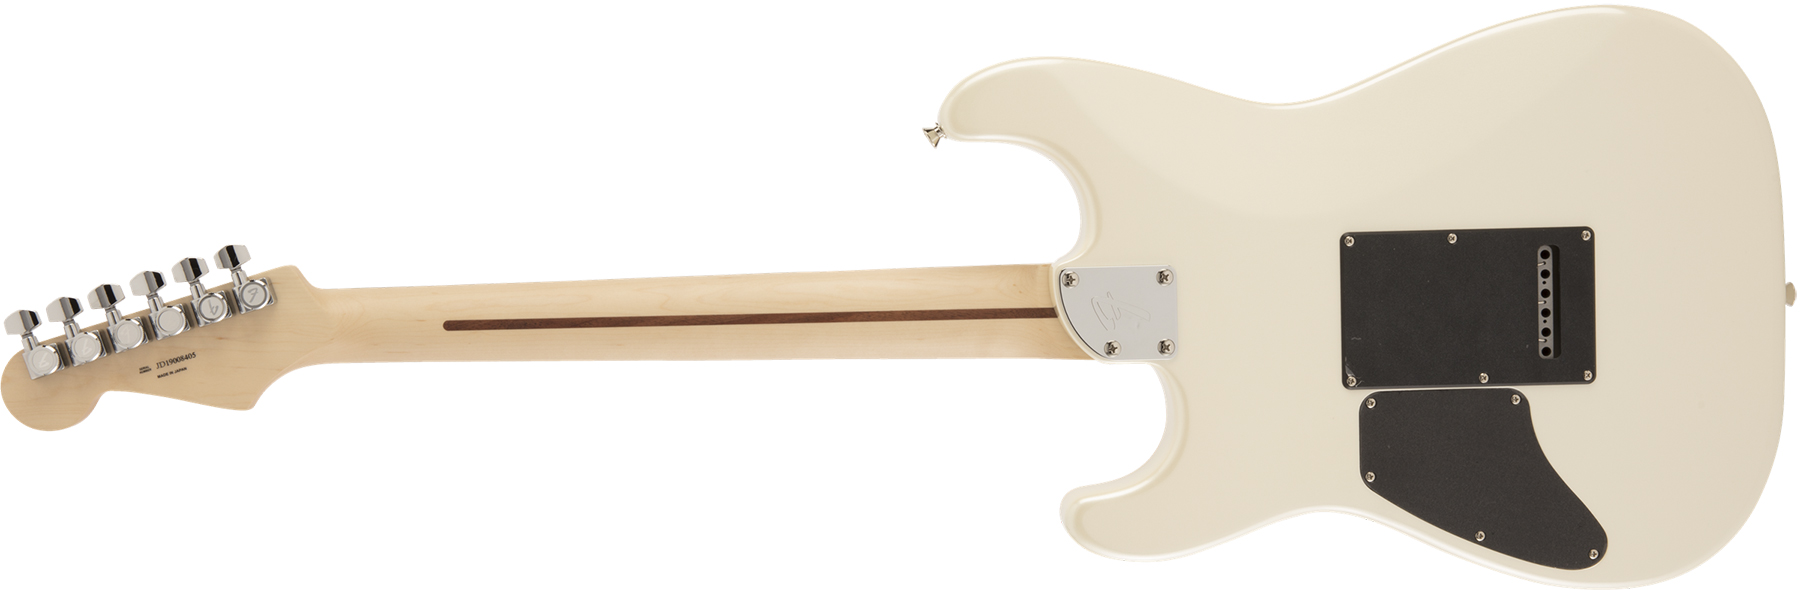 Fender Strat Modern Hh Japon Trem Rw - Olympic Pearl - Guitare Électrique Forme Str - Variation 1